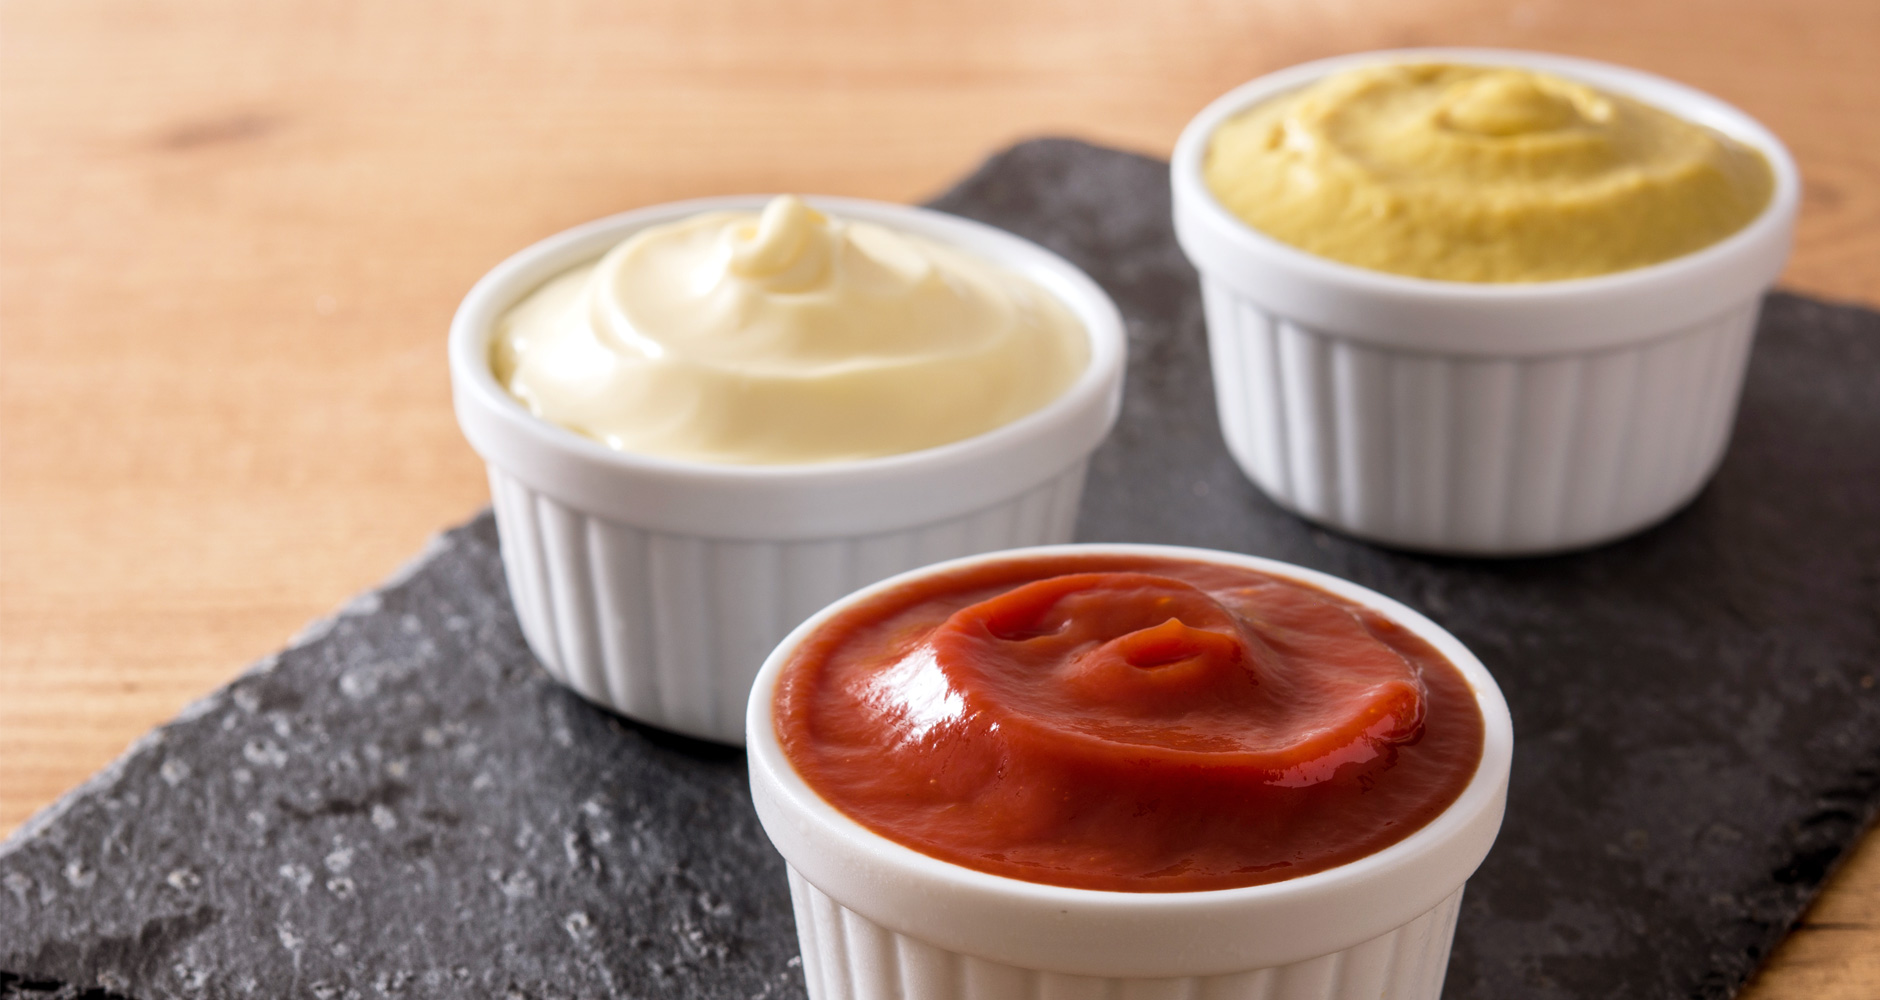 Make-Your-Own-Ketchup-Mustard-Mayo-A235896606